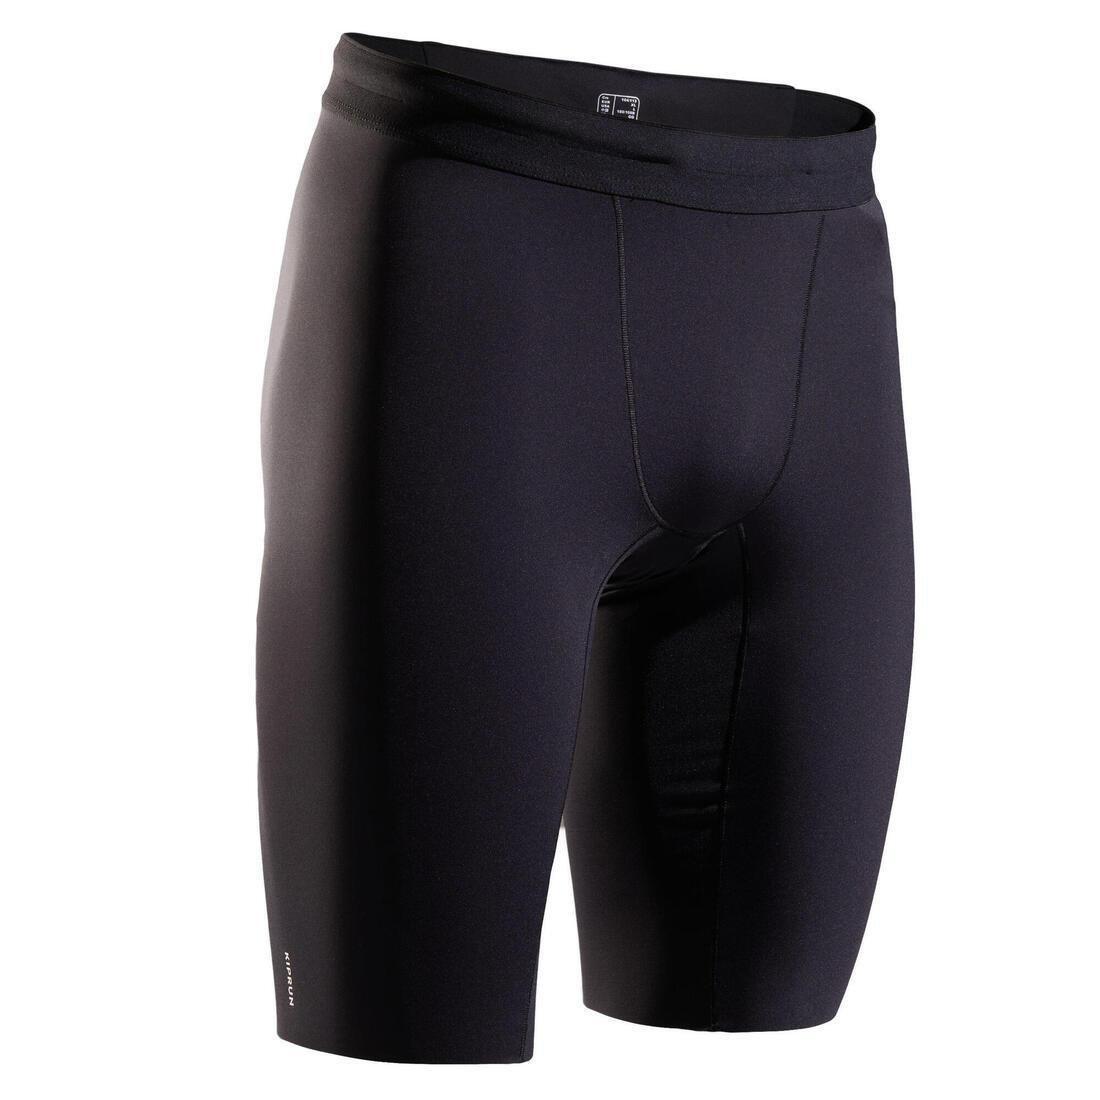 KALENJI - Men Running Tight Shorts, Black